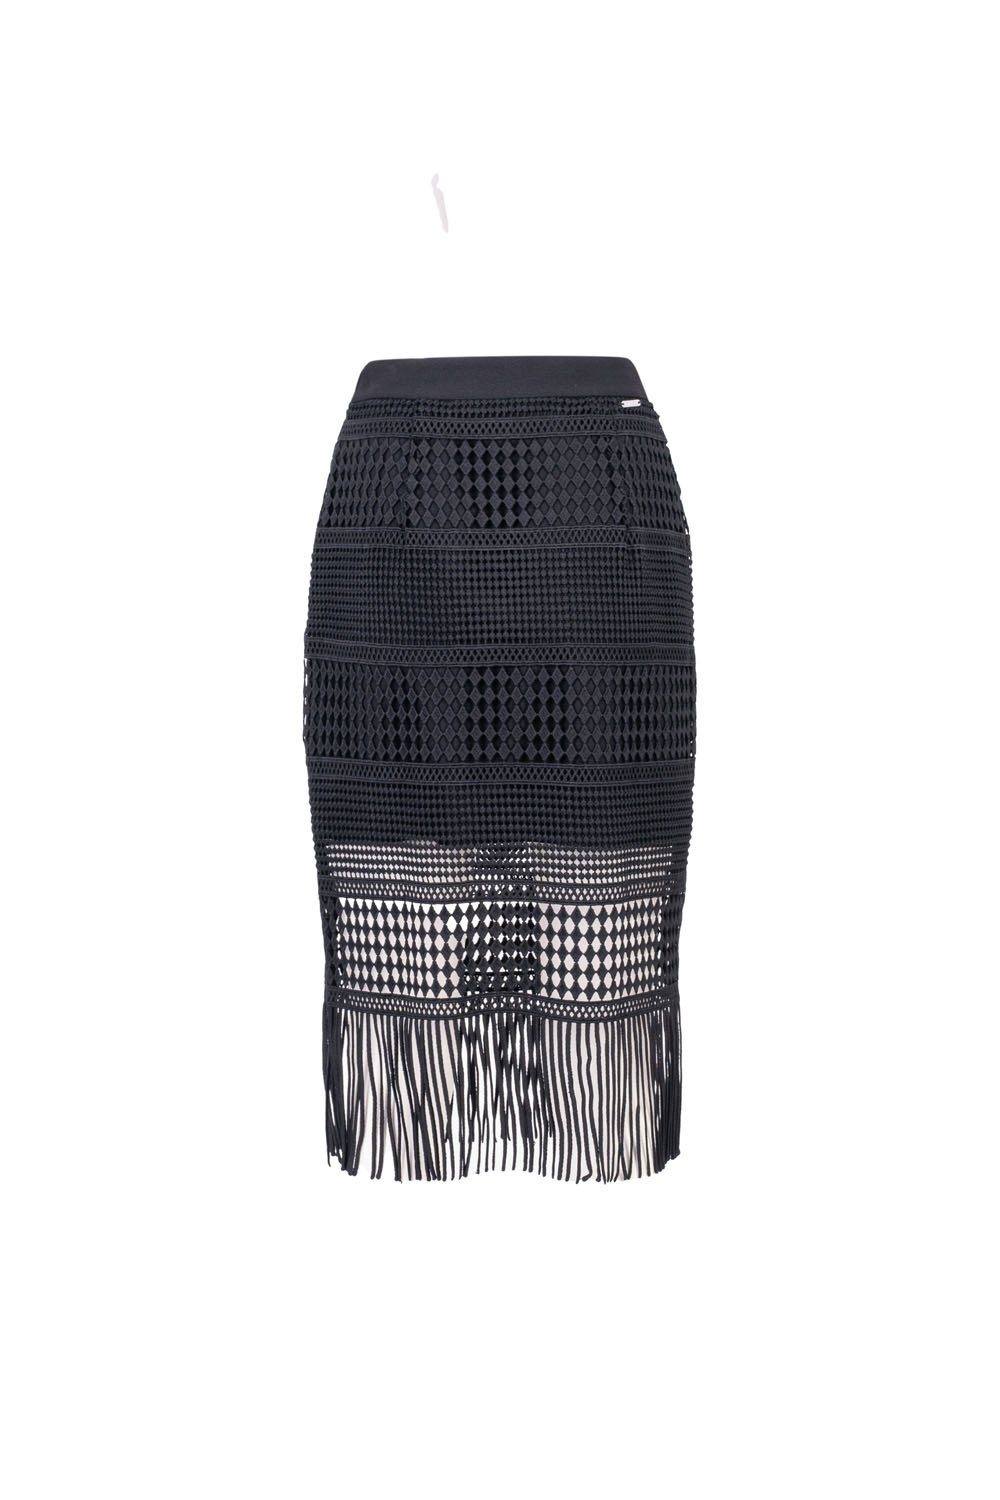 Mini Skirt with Decorative Fringe Overlay and Elasticated Waistband